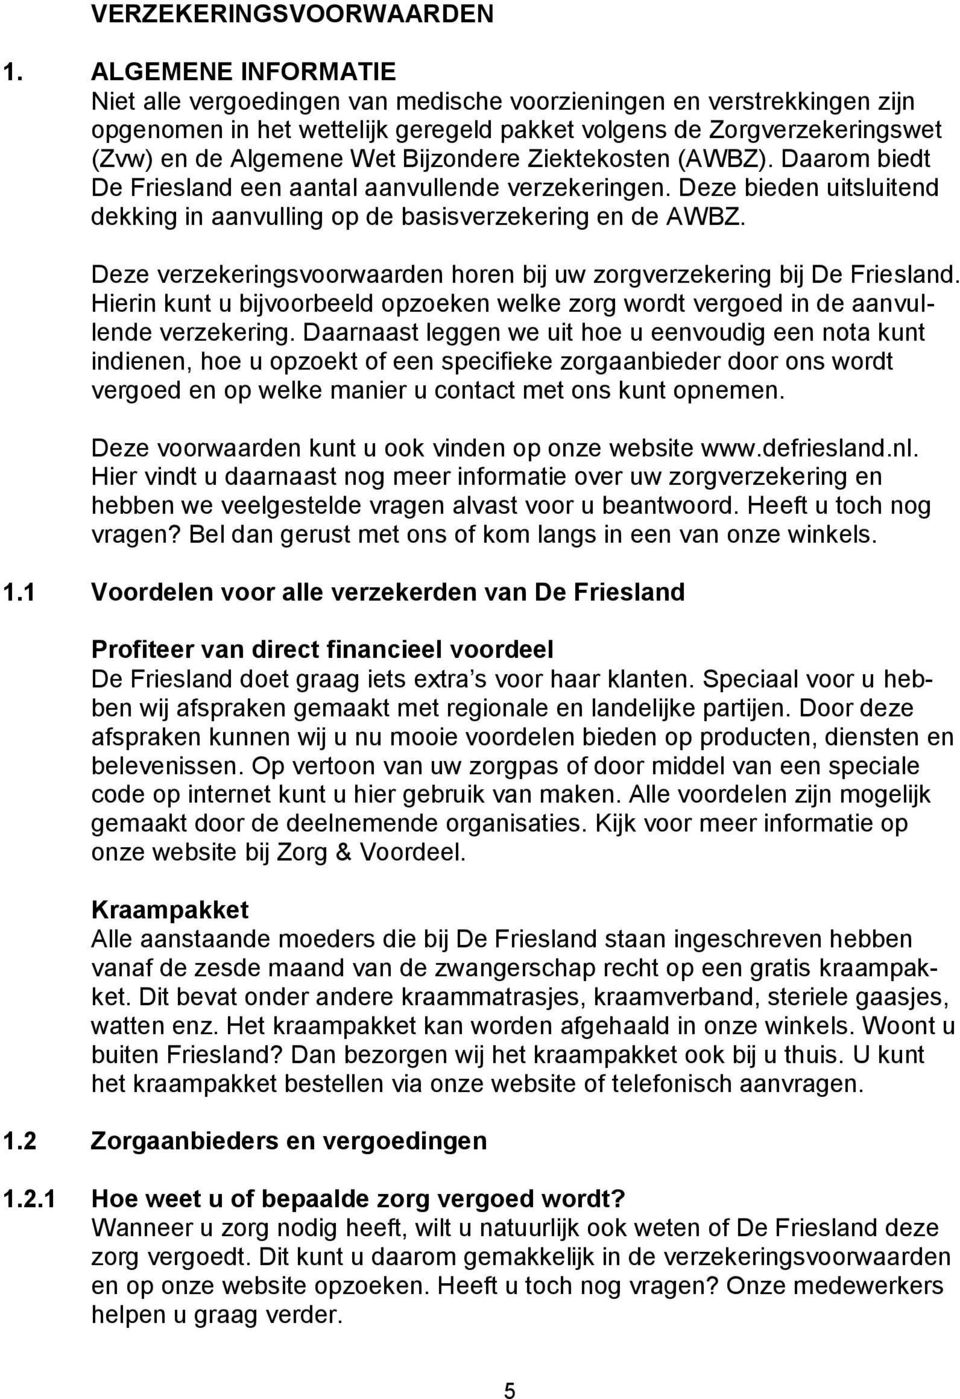 Bijzondere Ziektekosten (AWBZ). Daarom biedt De Friesland een aantal aanvullende verzekeringen. Deze bieden uitsluitend dekking in aanvulling op de basisverzekering en de AWBZ.